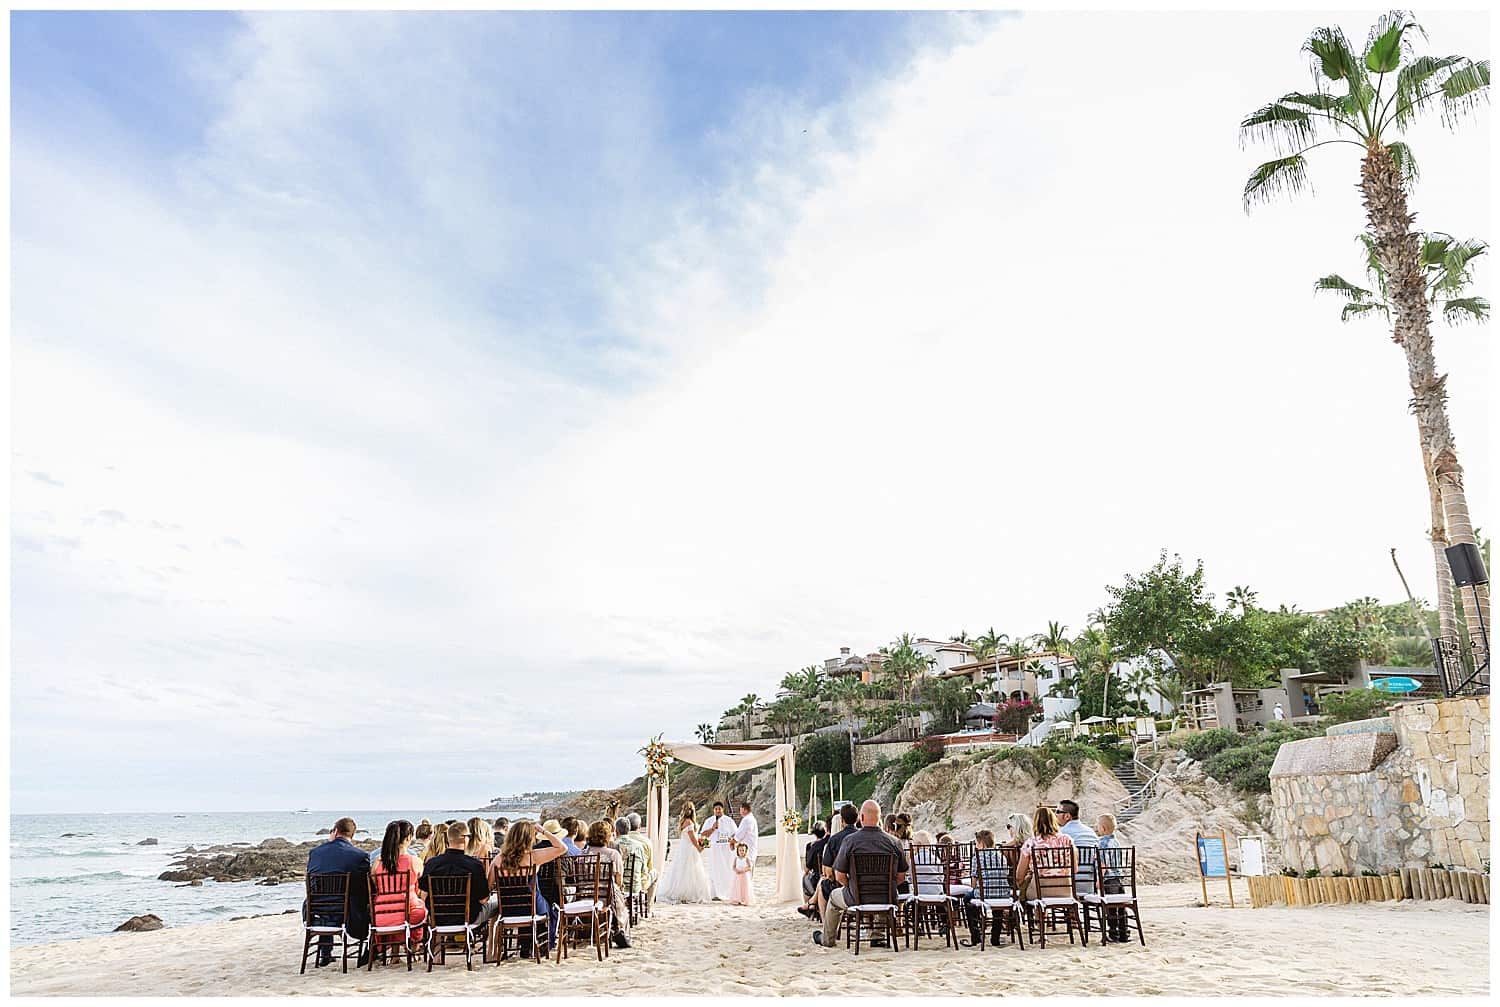 ?pp route=%2Fimage resize&path=nBnaukzM2AzX5hGchJ3ZvR3boBXLu92ckJXYoNWay1SYyF2ctIXZoBXYyd2b09Gaw1yZulGZkV2dt8mYhN2L0N3bw1CO2IzNtgjMvEDMvkTMwIjf&width=768 - Cabo Surf Hotel Wedding: Intimate & fun!